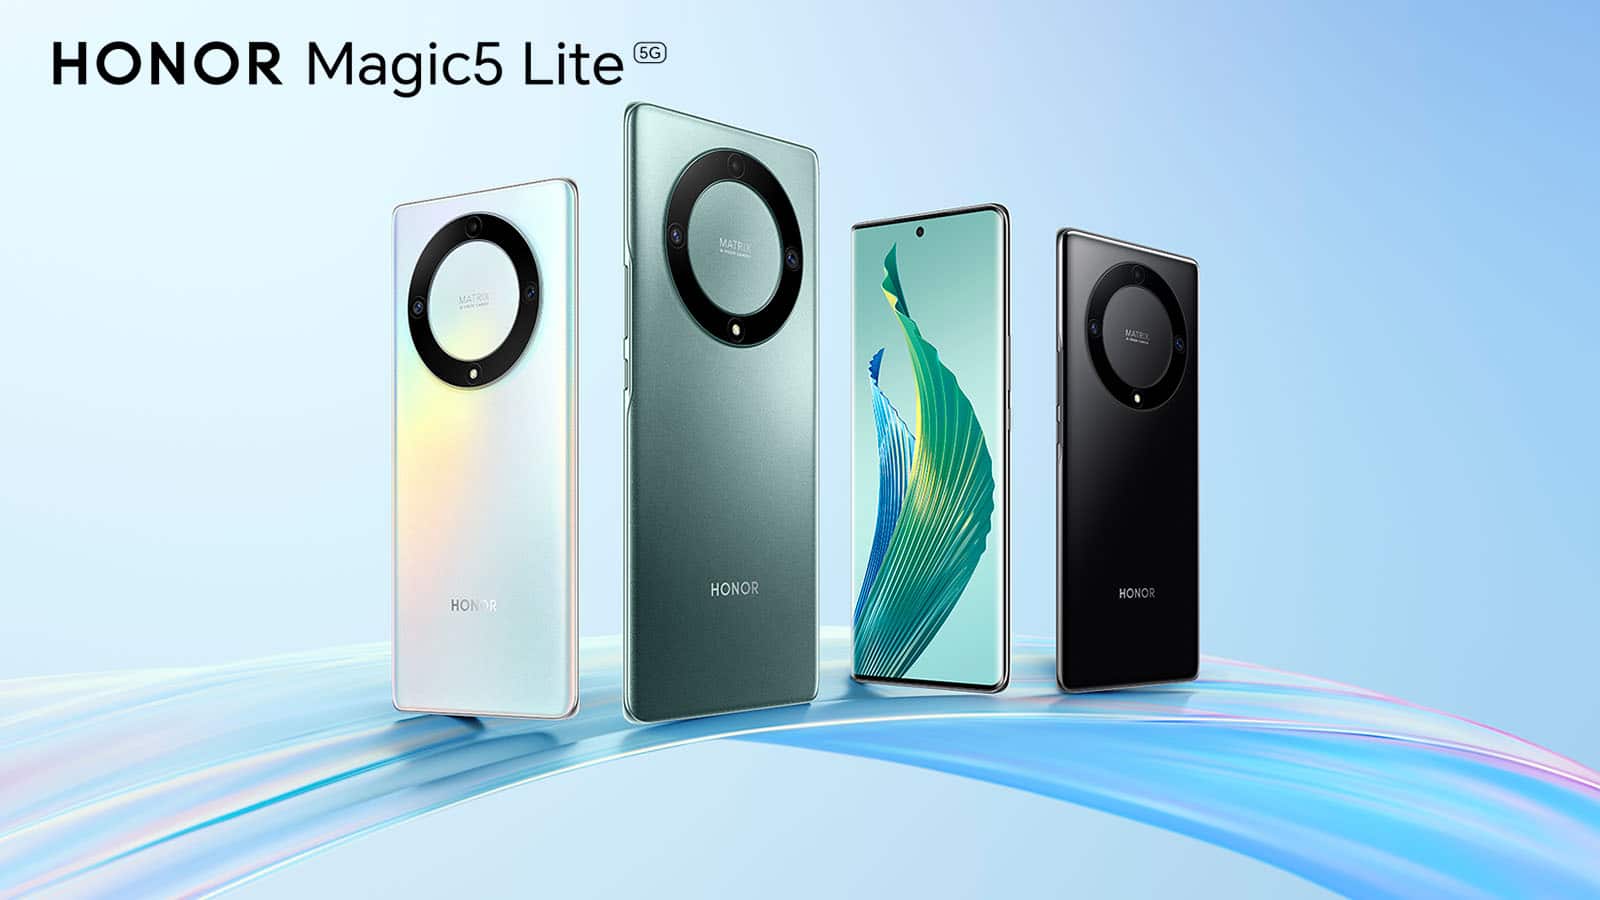 Honor annonce le Magic 5 Lite, un smartphone avec une très bonne autonomie et un design premium ! Android